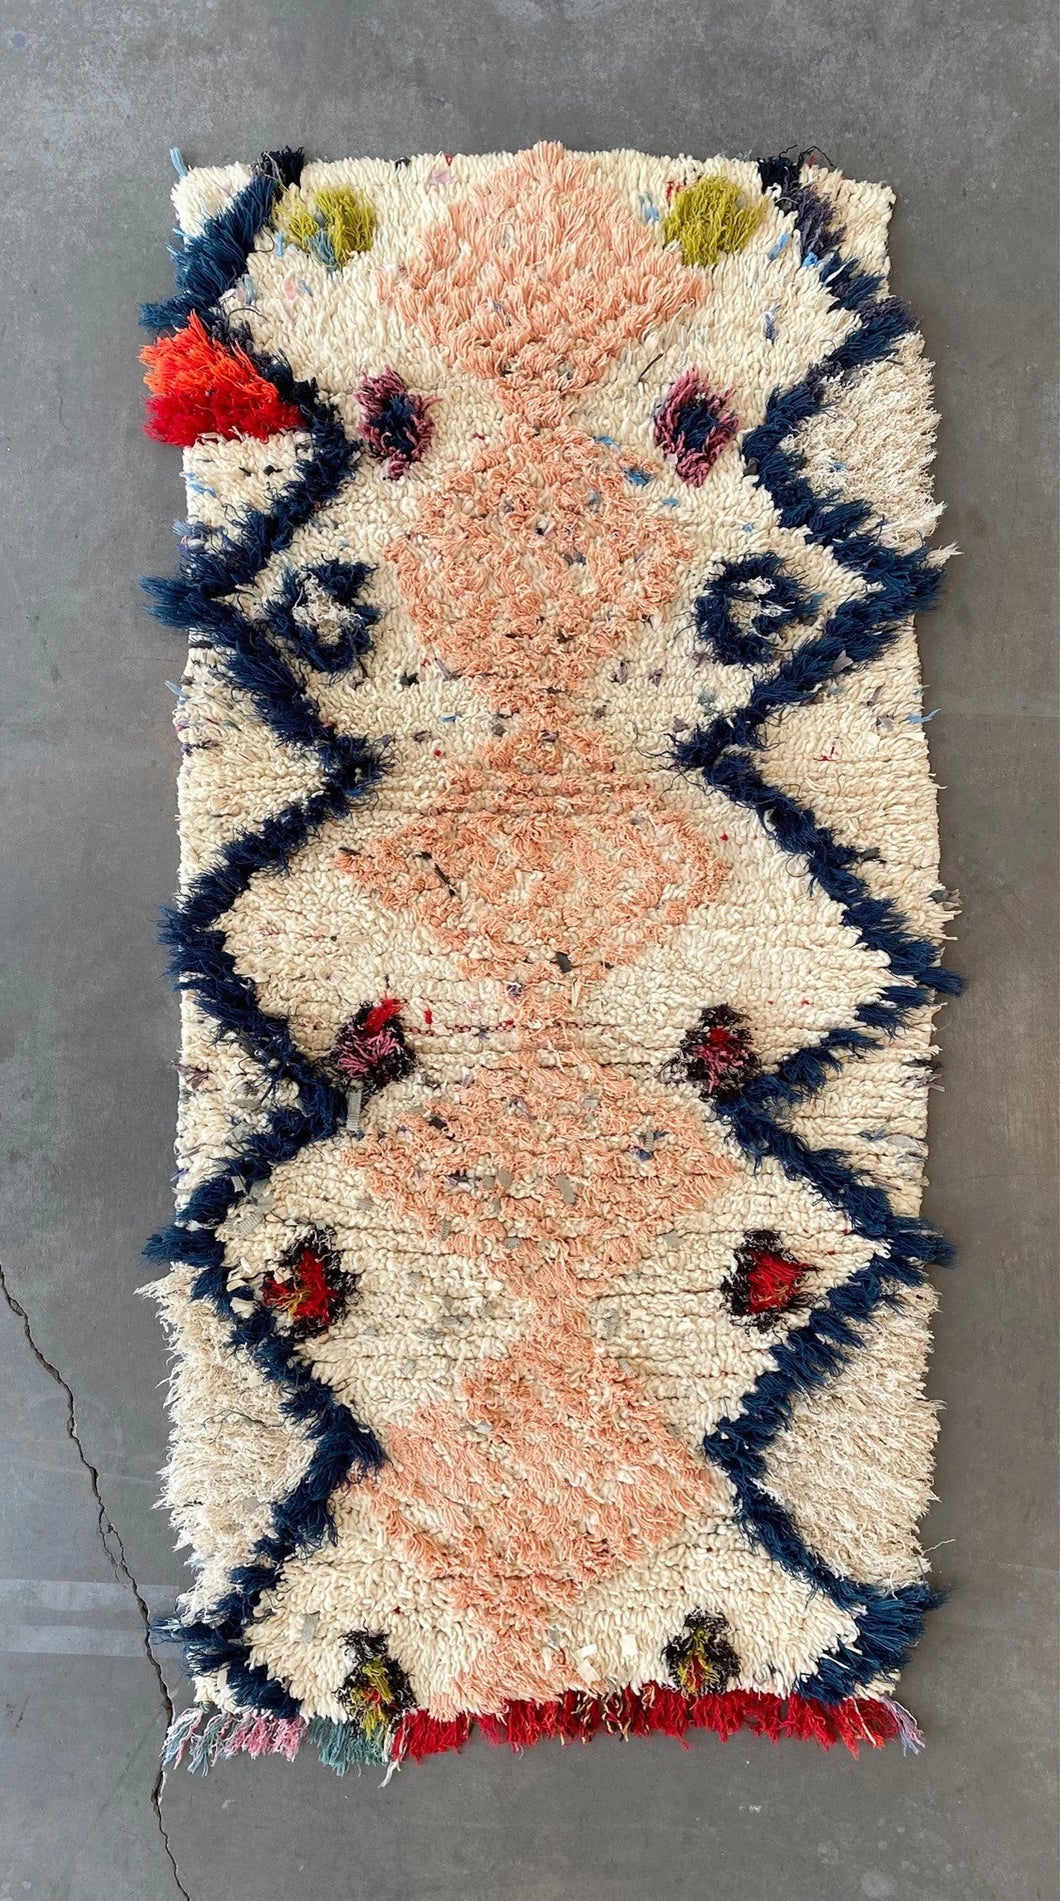 AZILAL MOROCCAN RUNNER #658 - Vintage Handmade Carpet